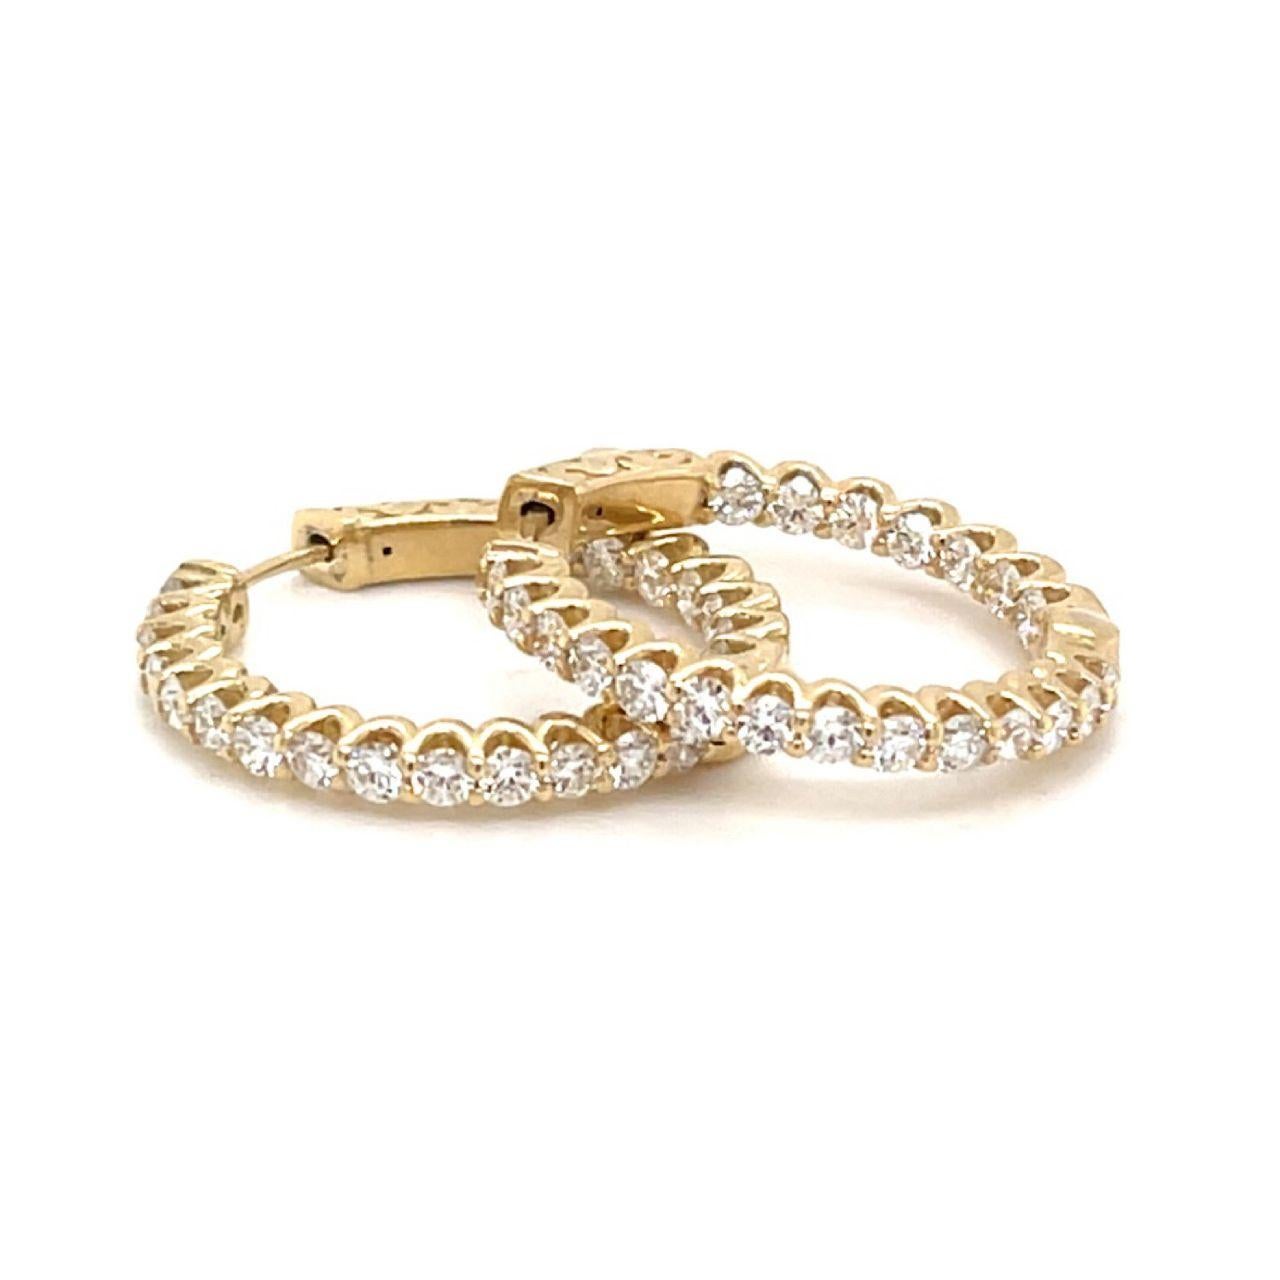 3.42 carats Diamond Hoop Earrings in 14k Yellow gold